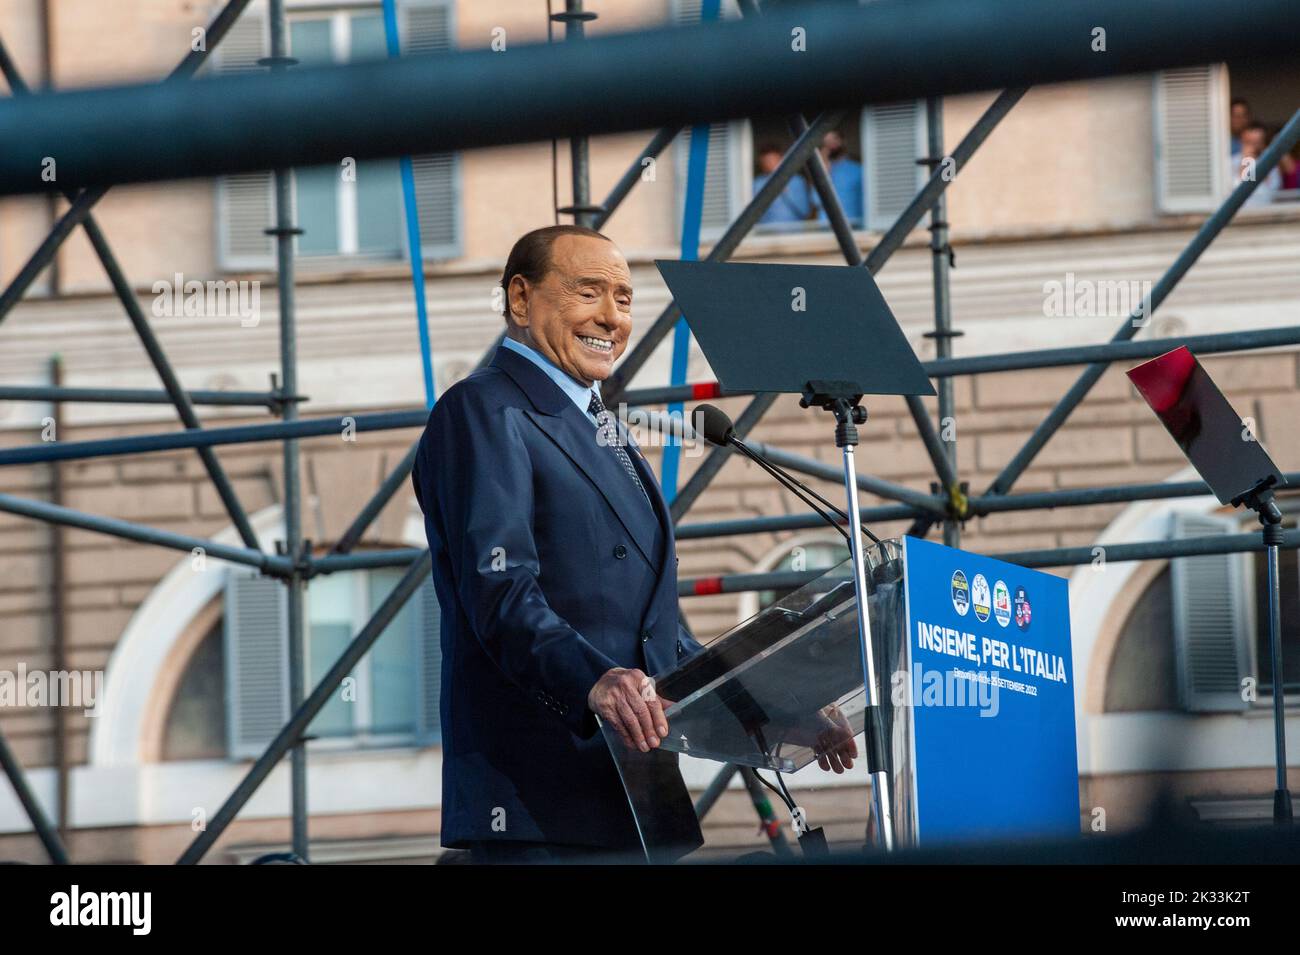 Rome, Italie 22/09/2022: 'Insieme per Italia', clôture de la campagne électorale de la coalition de droite pour l'élection générale italienne. Silvio Berlusconi © Andrea Sabbadini Banque D'Images